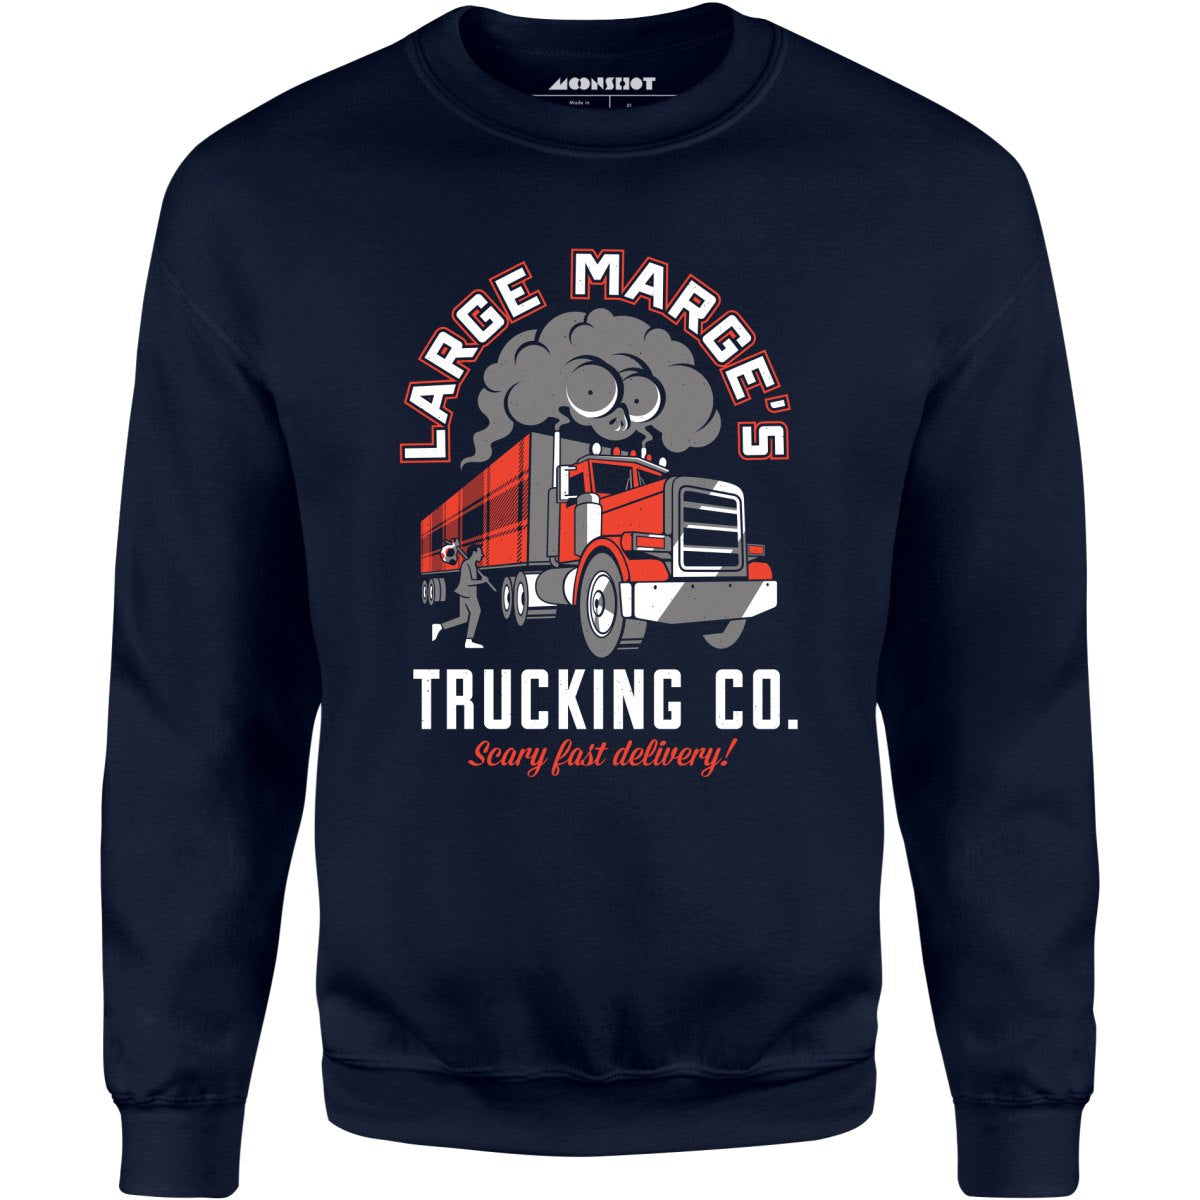 Large Marge's Trucking Co. - Unisex Sweatshirt